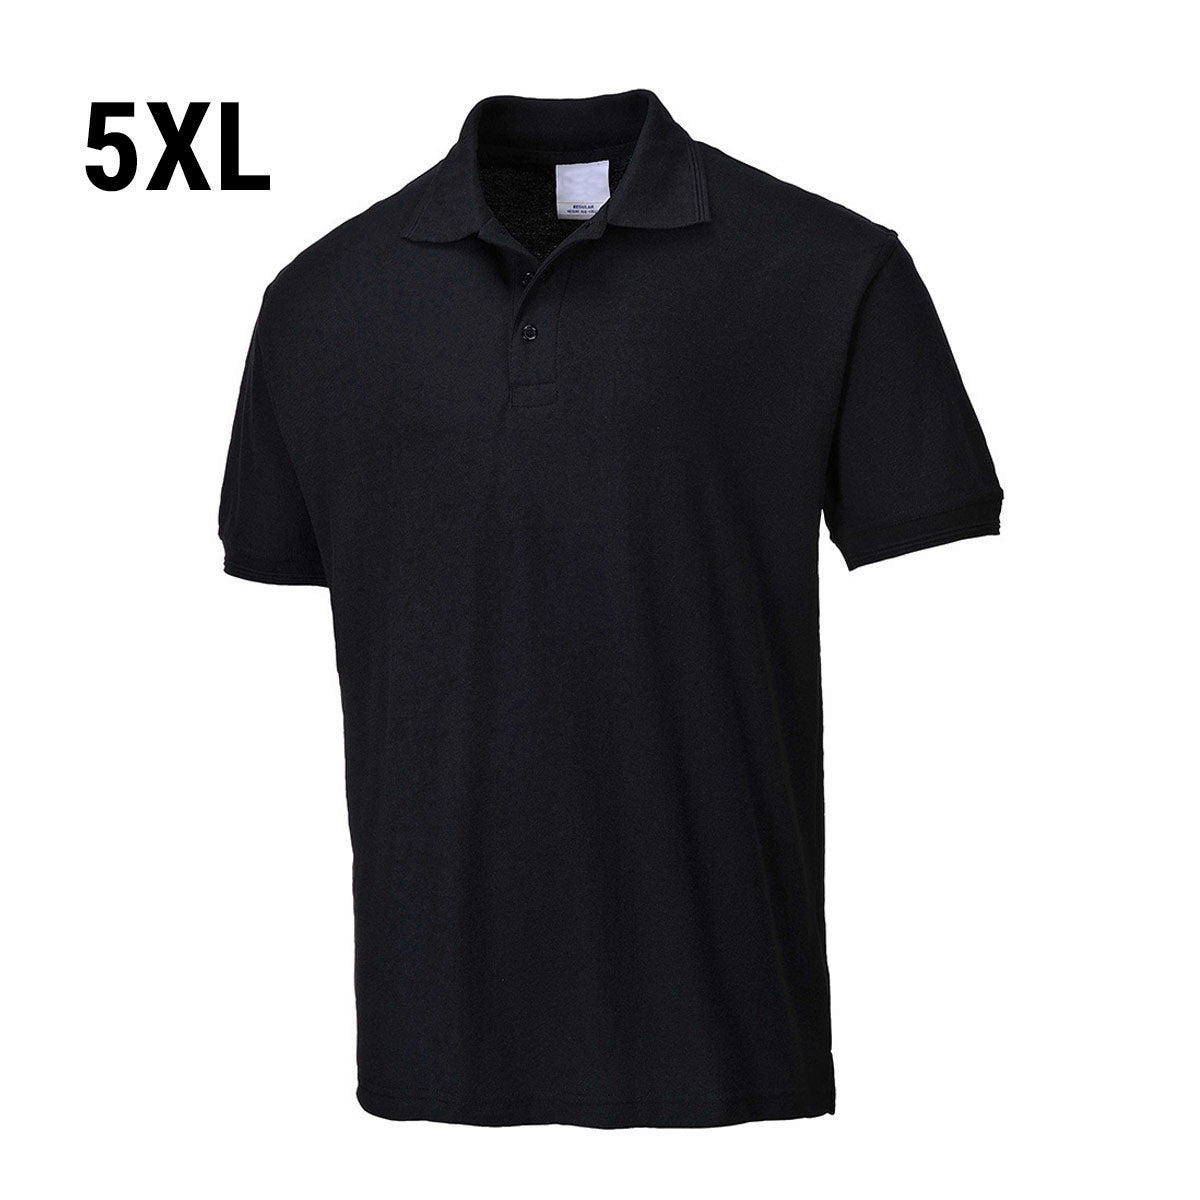 Poloskjorte for menn - Svart - Størrelse: 5XL